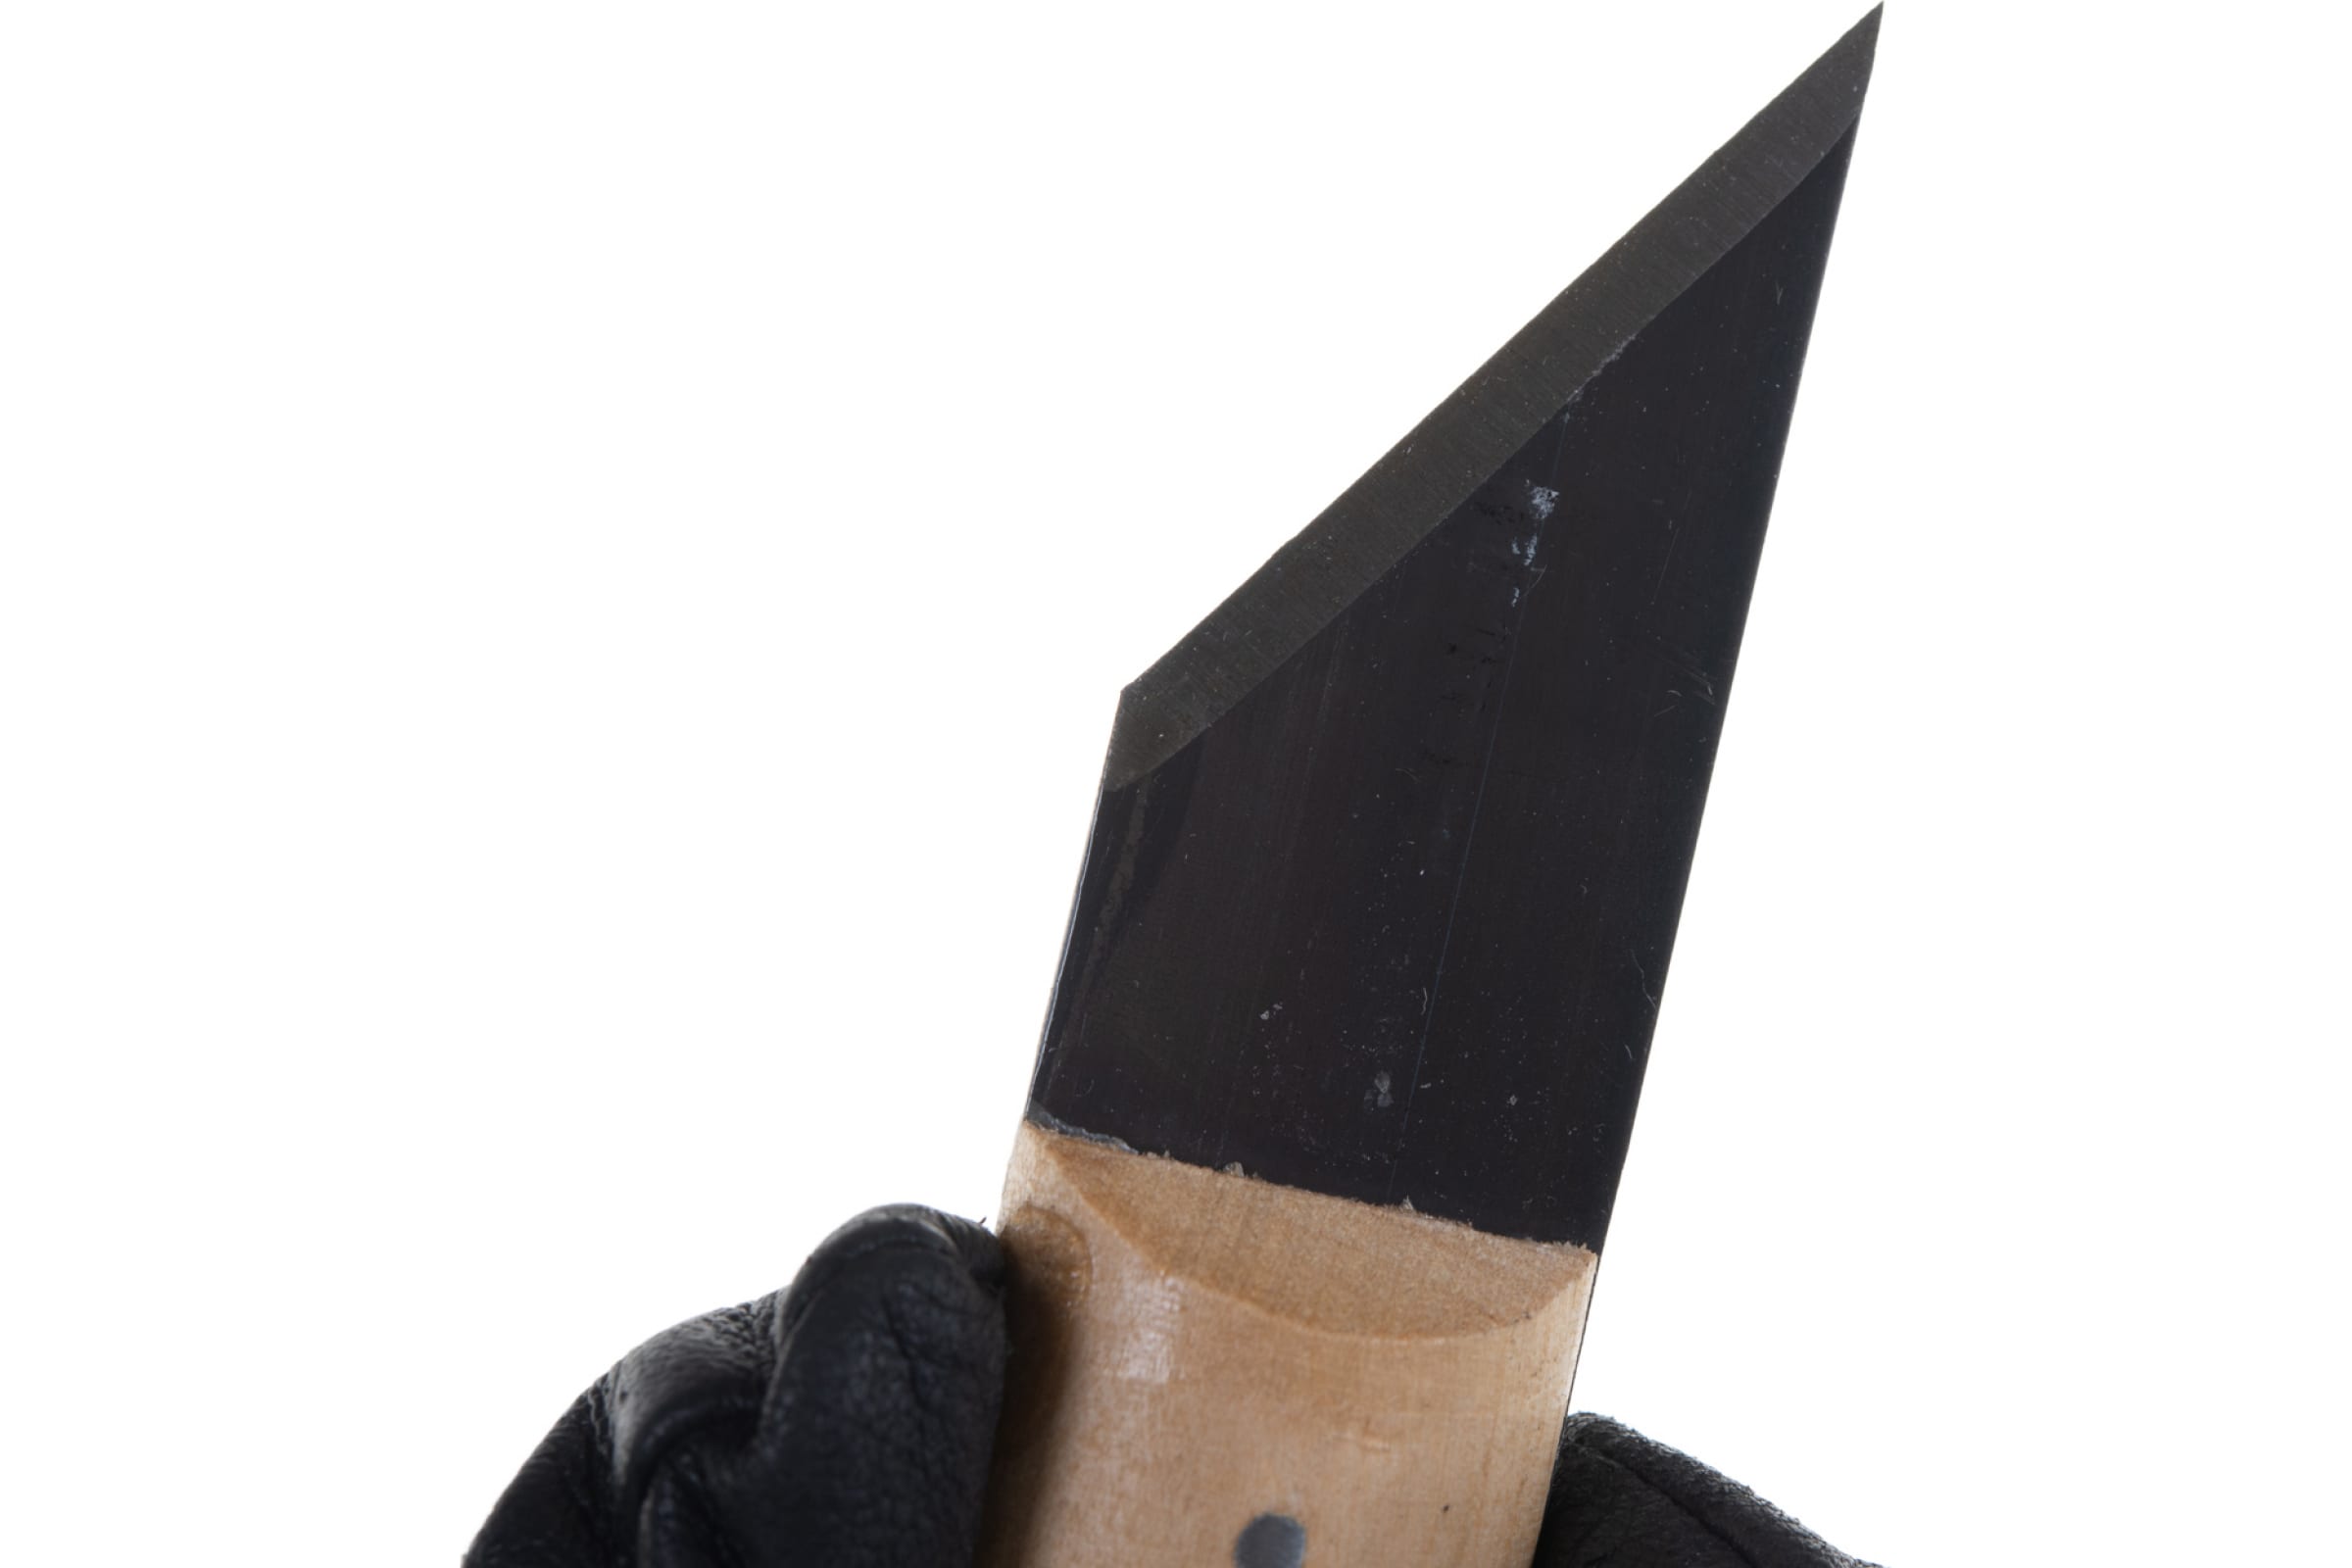 Нож сапожный трапециевидный 180мм РОССИЯ 78995